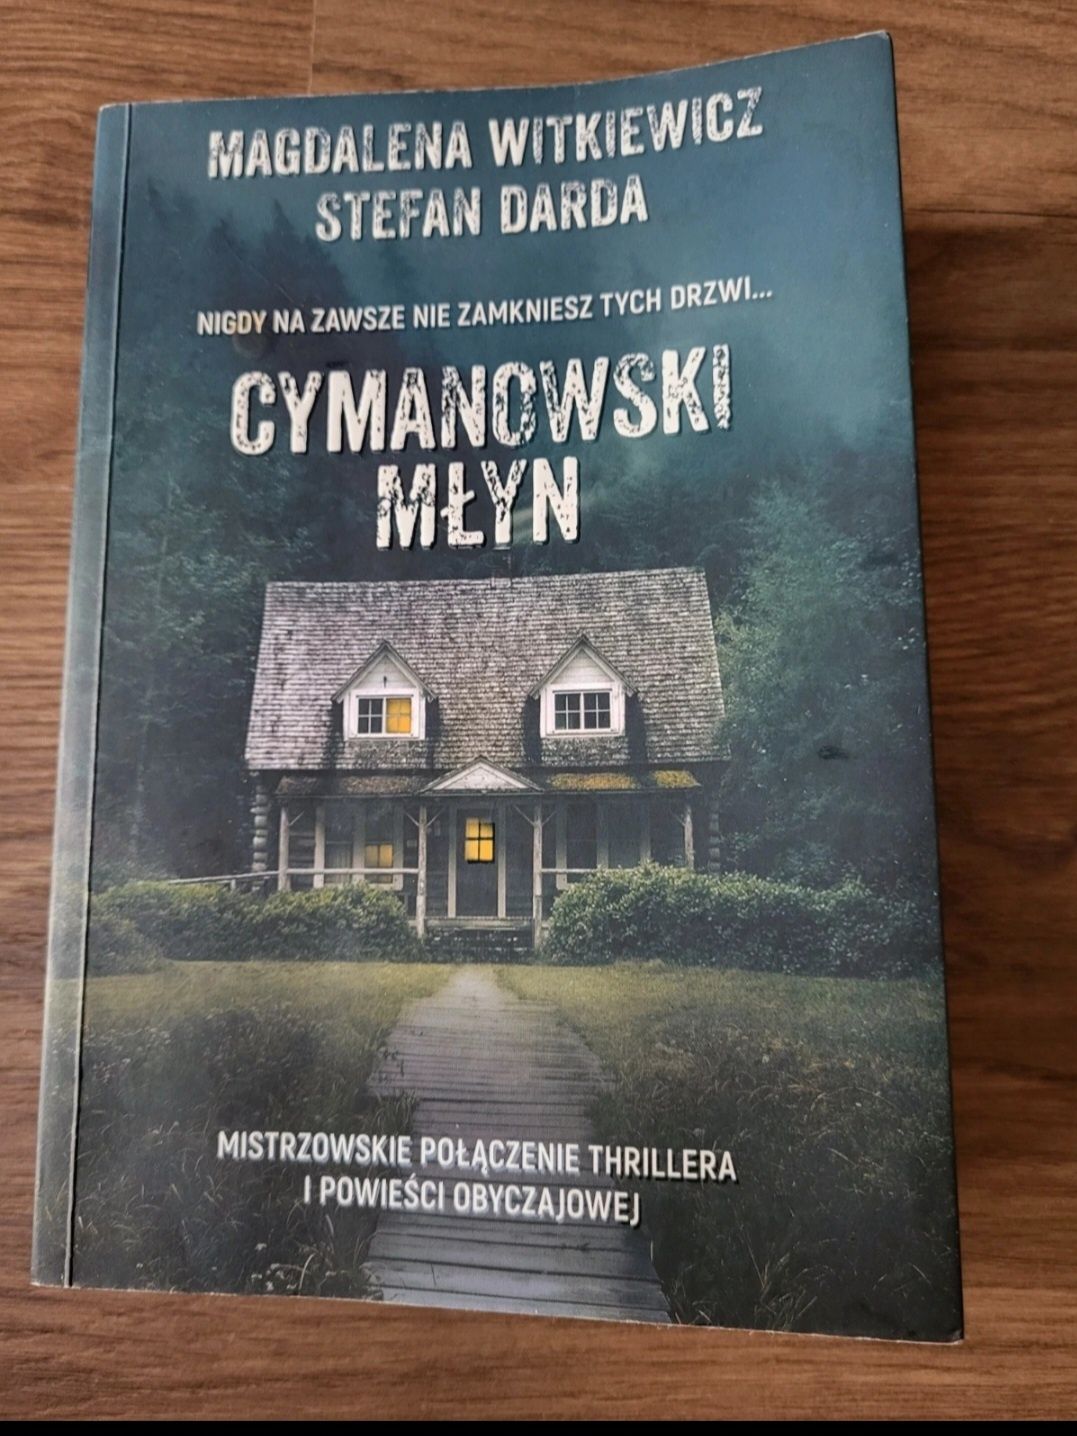 Cymanowski Młyn Magdalena Witkiewicz Stefan Derda

W środku podpi